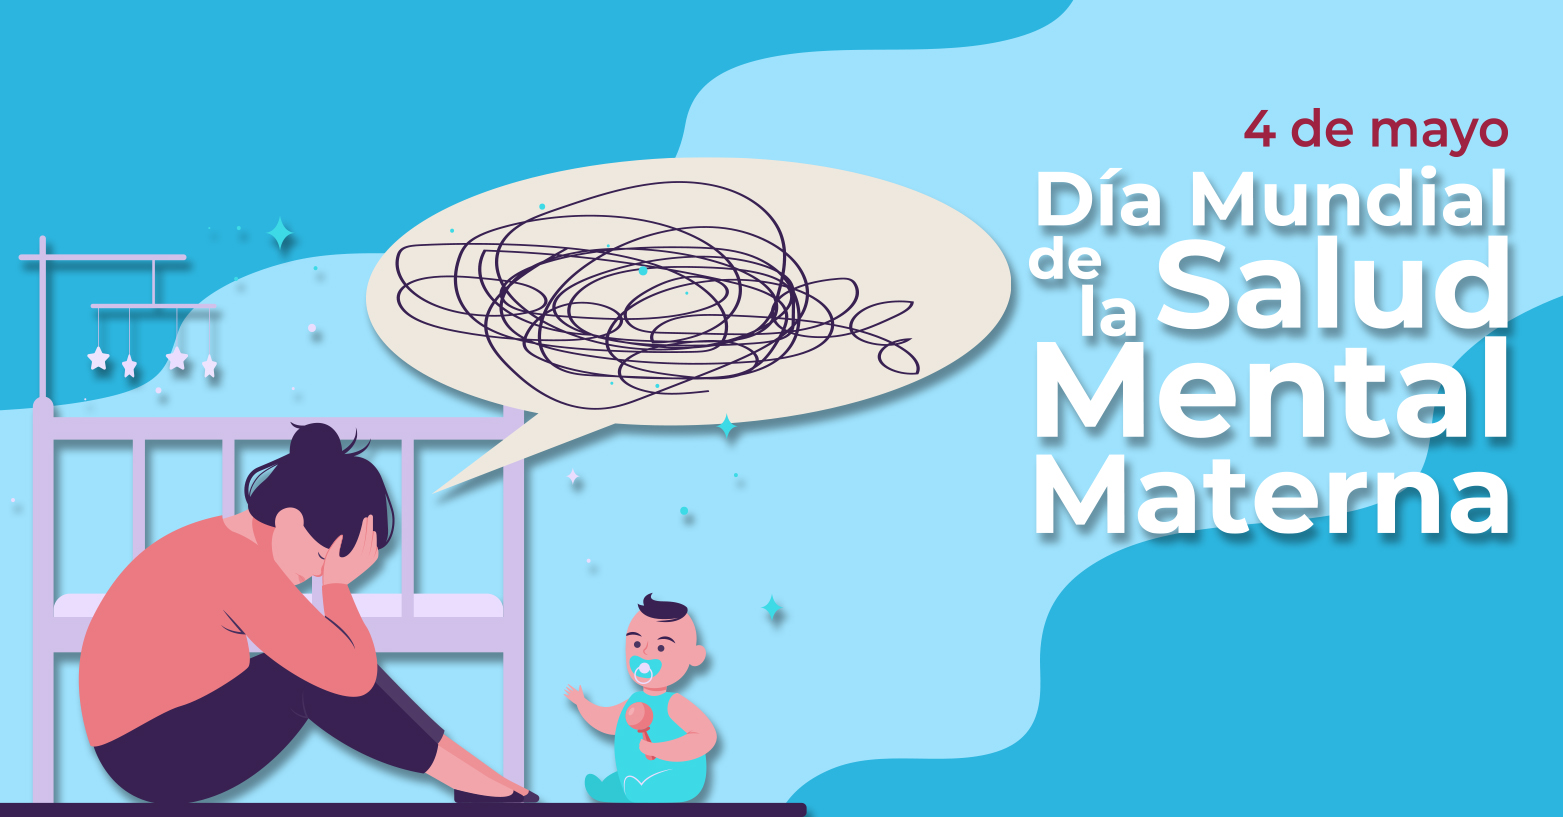 Día Mundial de la Salud Mental Materna | 04 de mayo